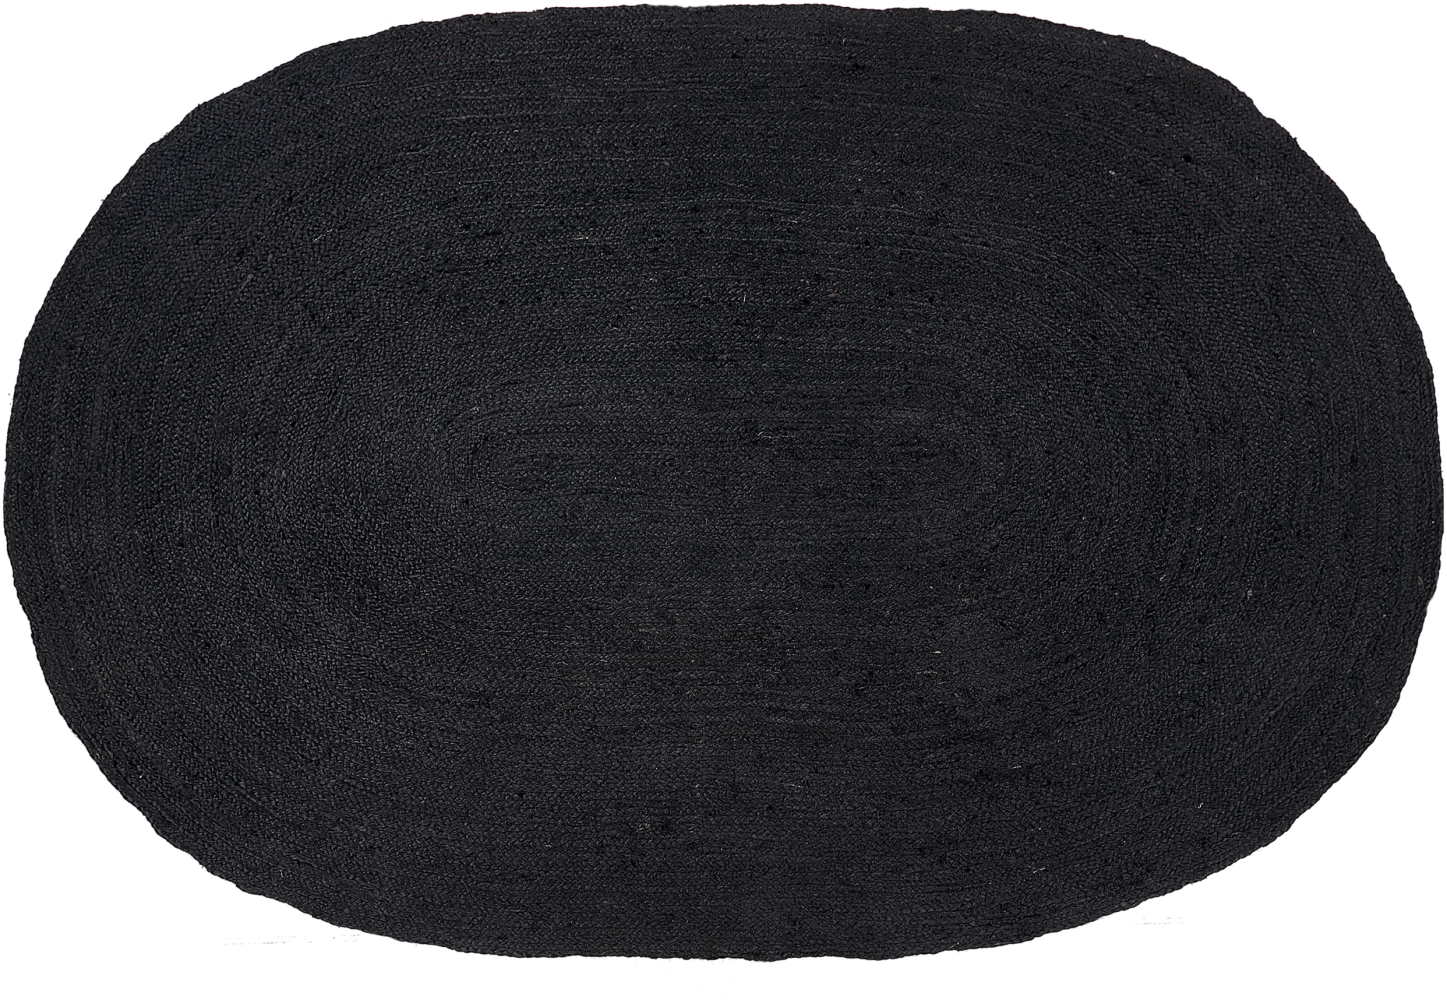 Teppich Jute schwarz 160 x 230 cm Kurzflor DEMIRCI Bild 1